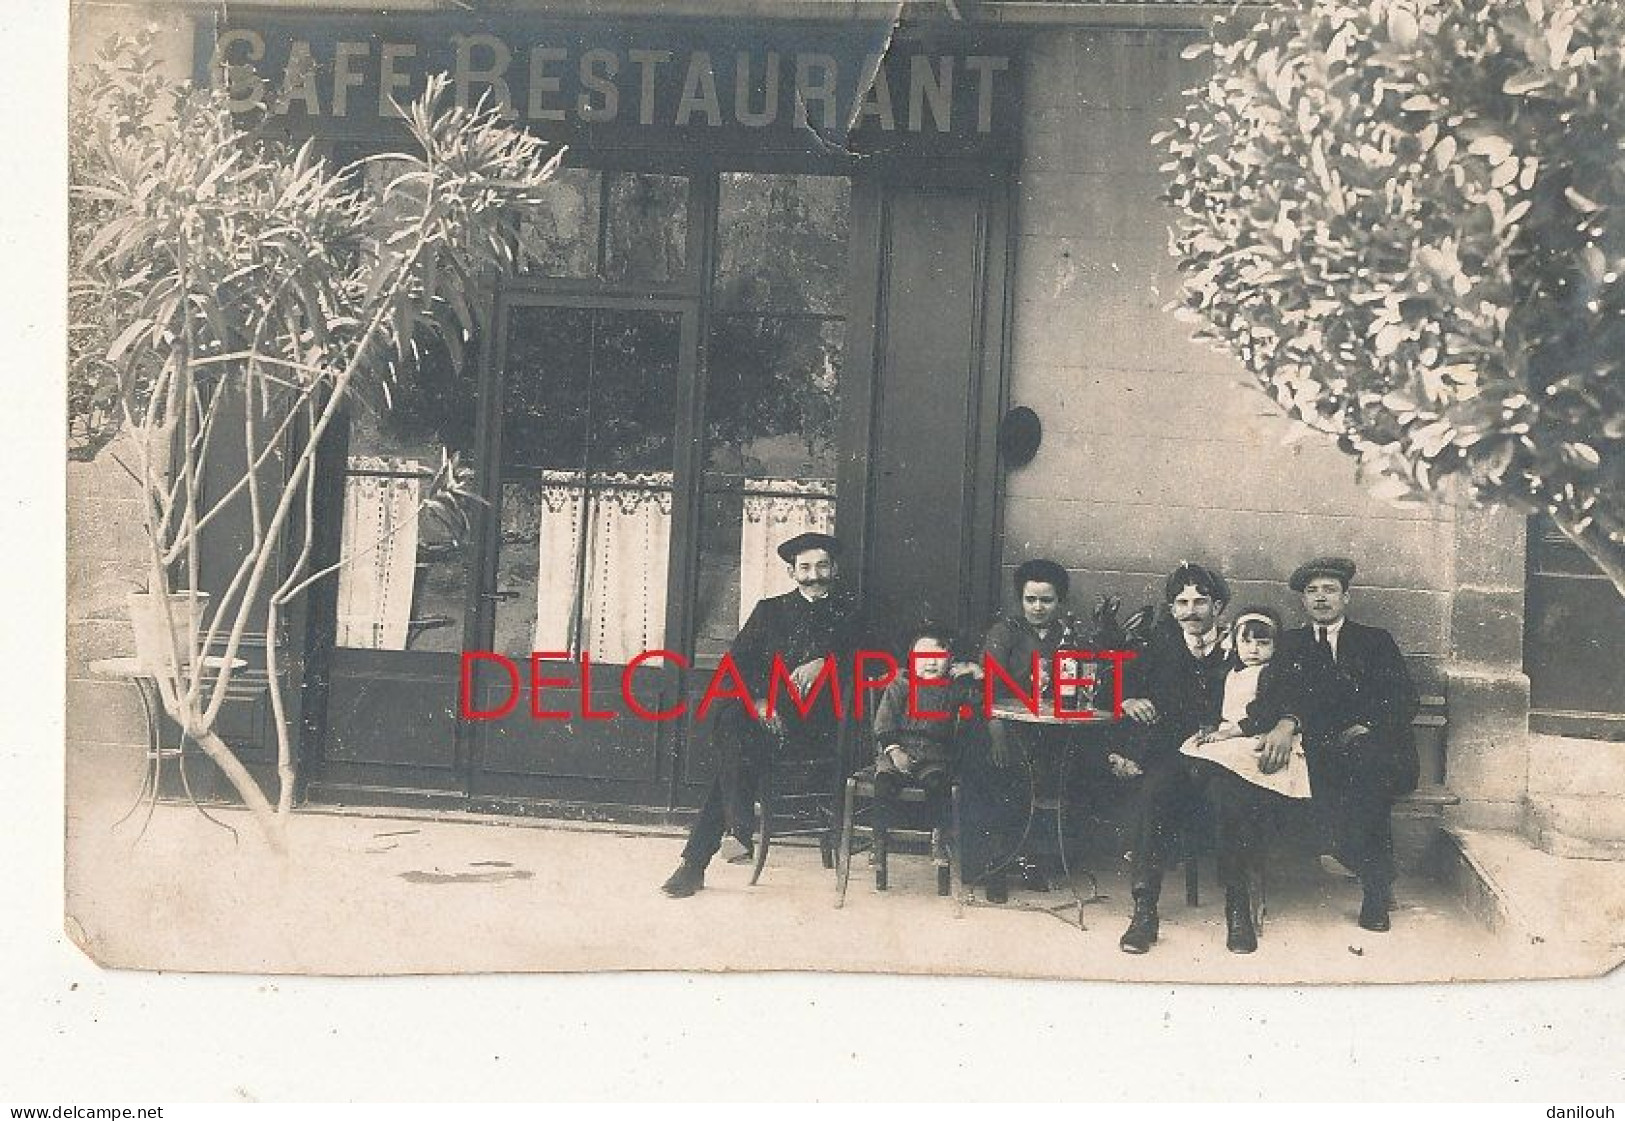 CARTE PHOTO / CAFE RESTAURANT   Devanture   Groupe Sur La Terrasse - Cafes